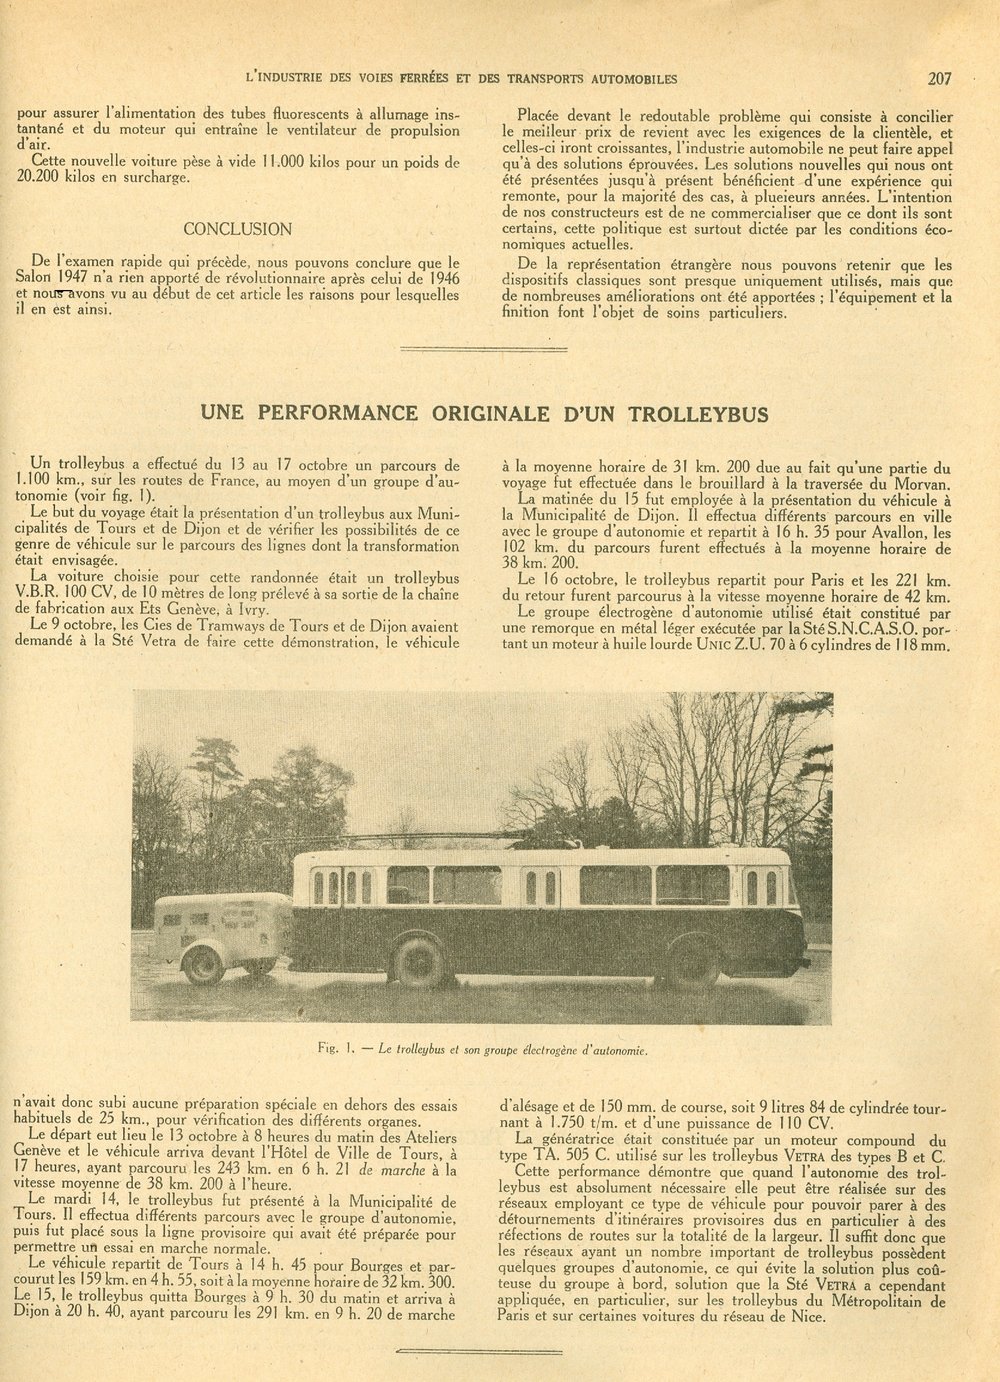 V tomtéž časopise se bylo možné dočíst o neobvyklém putování trolejbusu typu VBR přímo ze závodu Vetry v Ivry do měst Tours a Dijon (do Dijonu přes Bourges a zpět do Paříže přes Avallon)&nbsp;za prezentačními účely. Cesta tohoto trolejbusového "světoběžníkova" s přívěsem ukrývajícím dieselový pohonný agregát se odehrávala mezi 13. a 17. říjnem 1947.&nbsp;&nbsp;